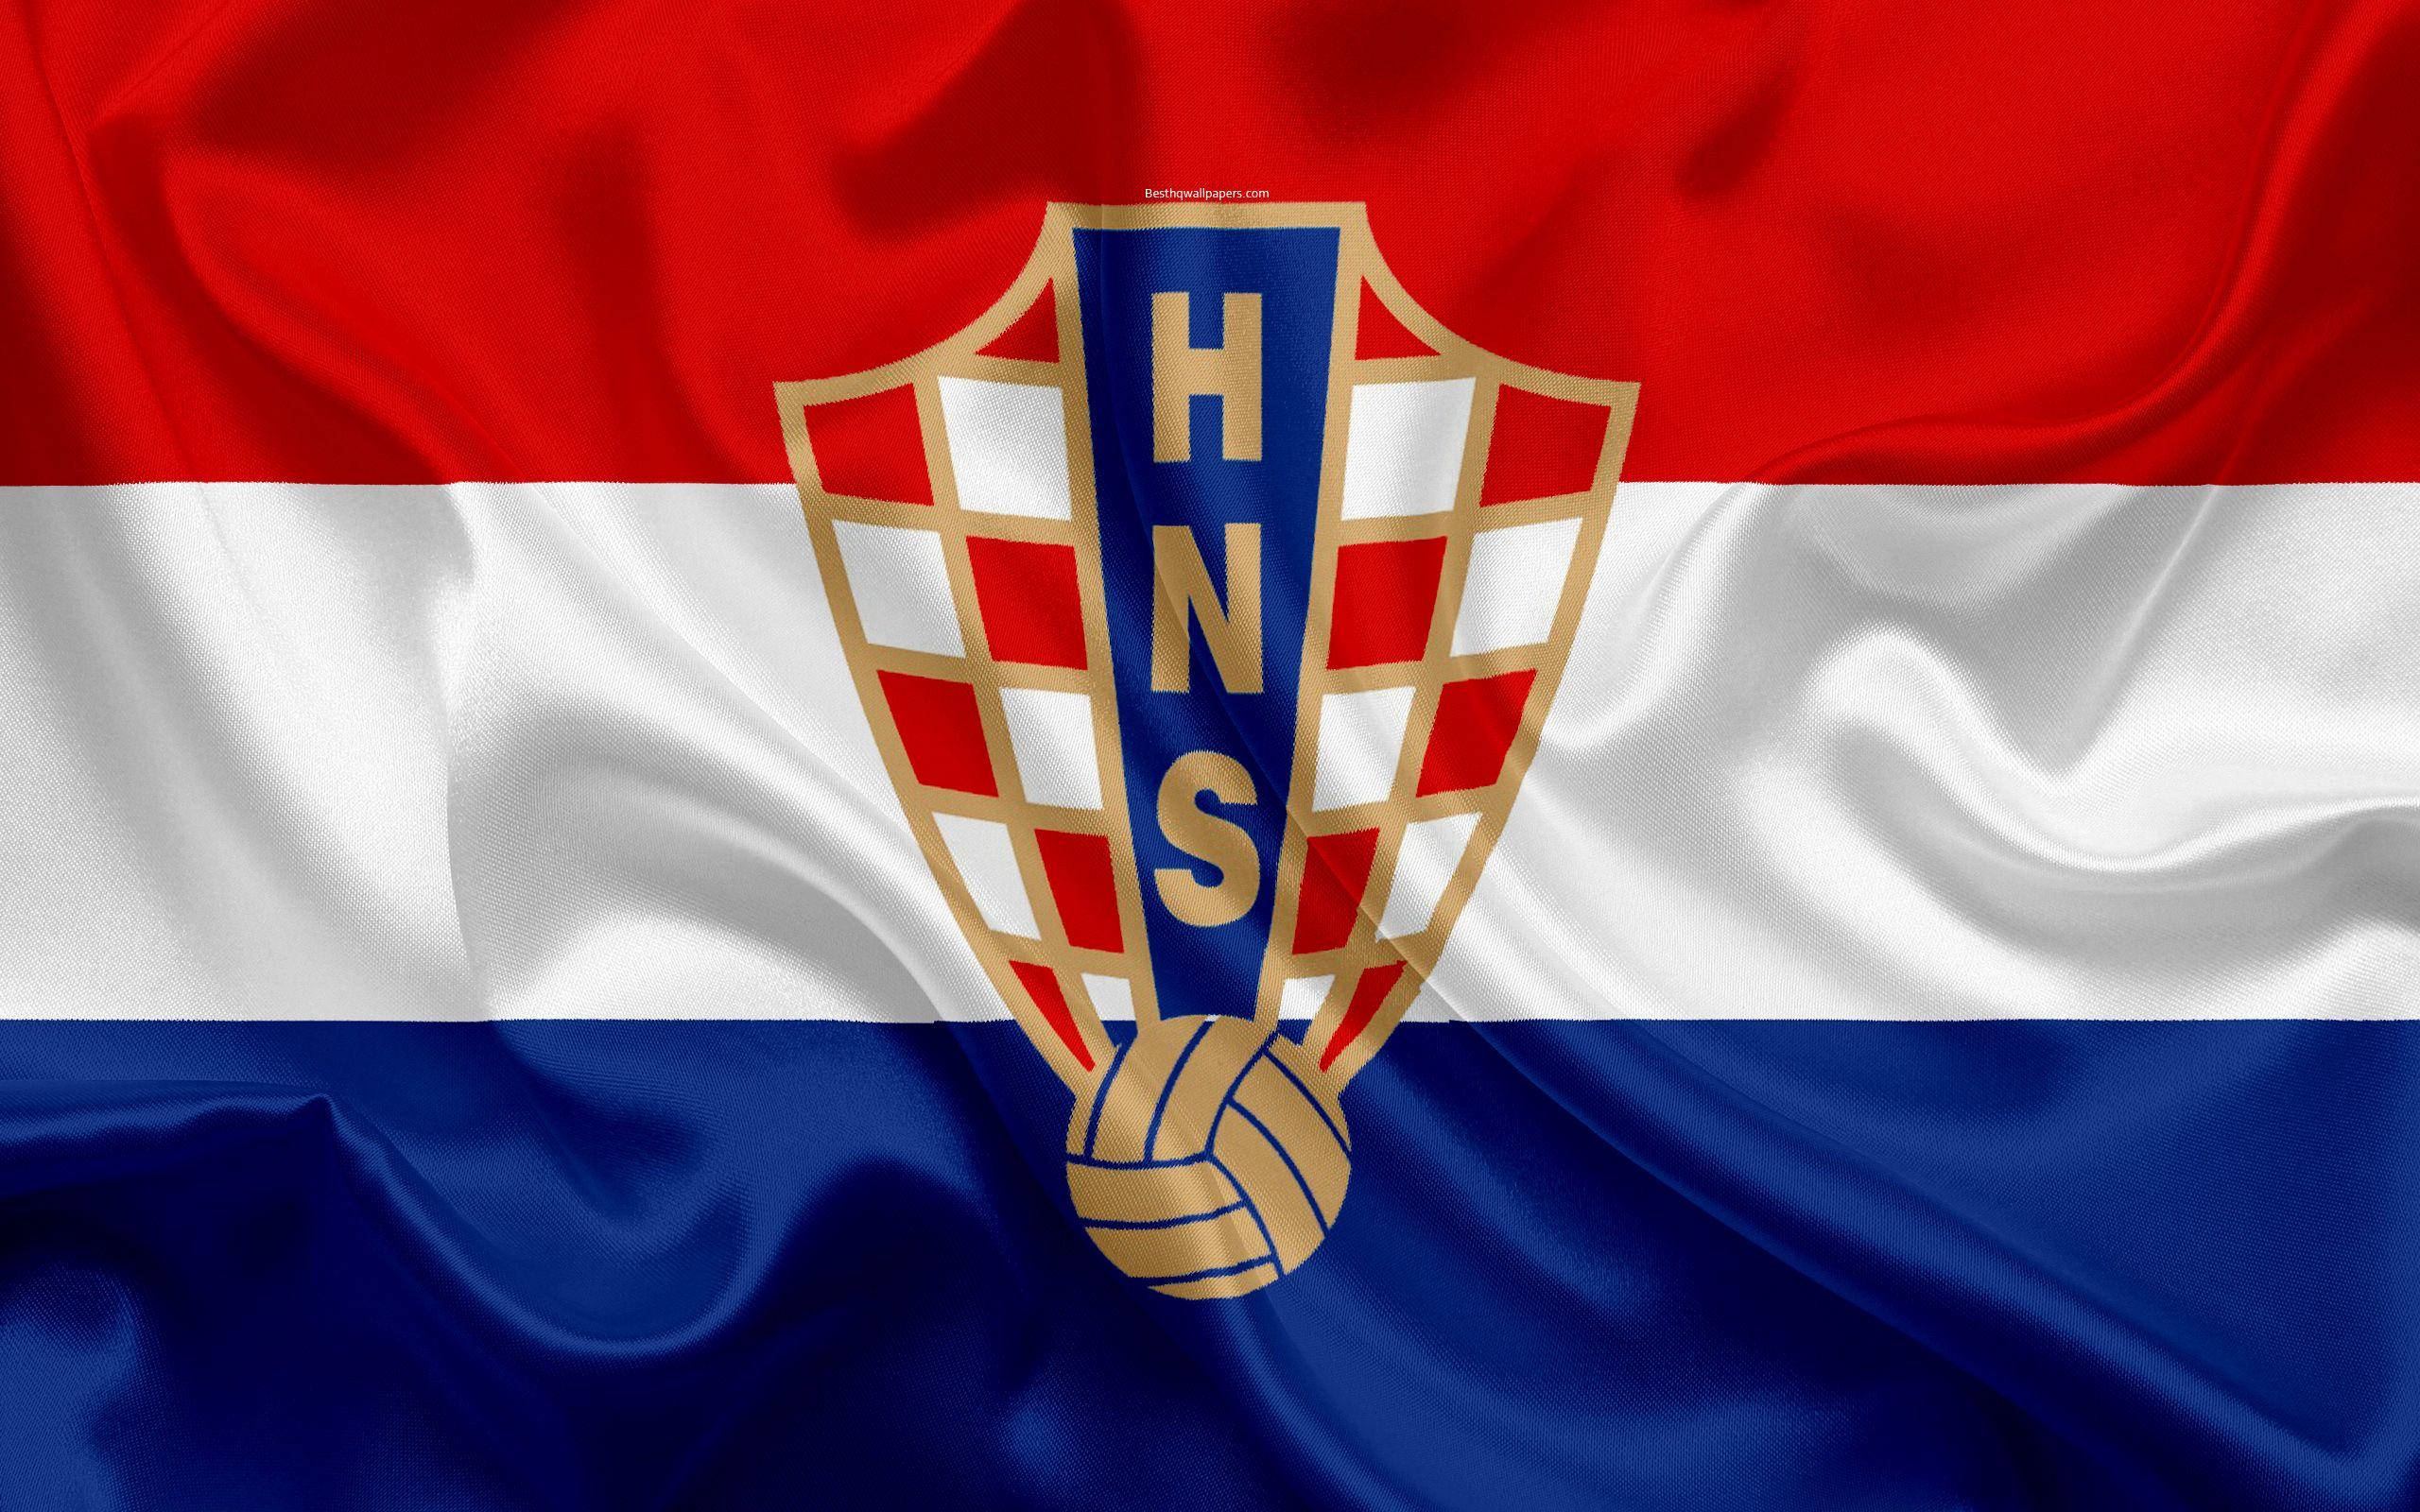 Download wallpaper Croatia national football team, emblem, logo